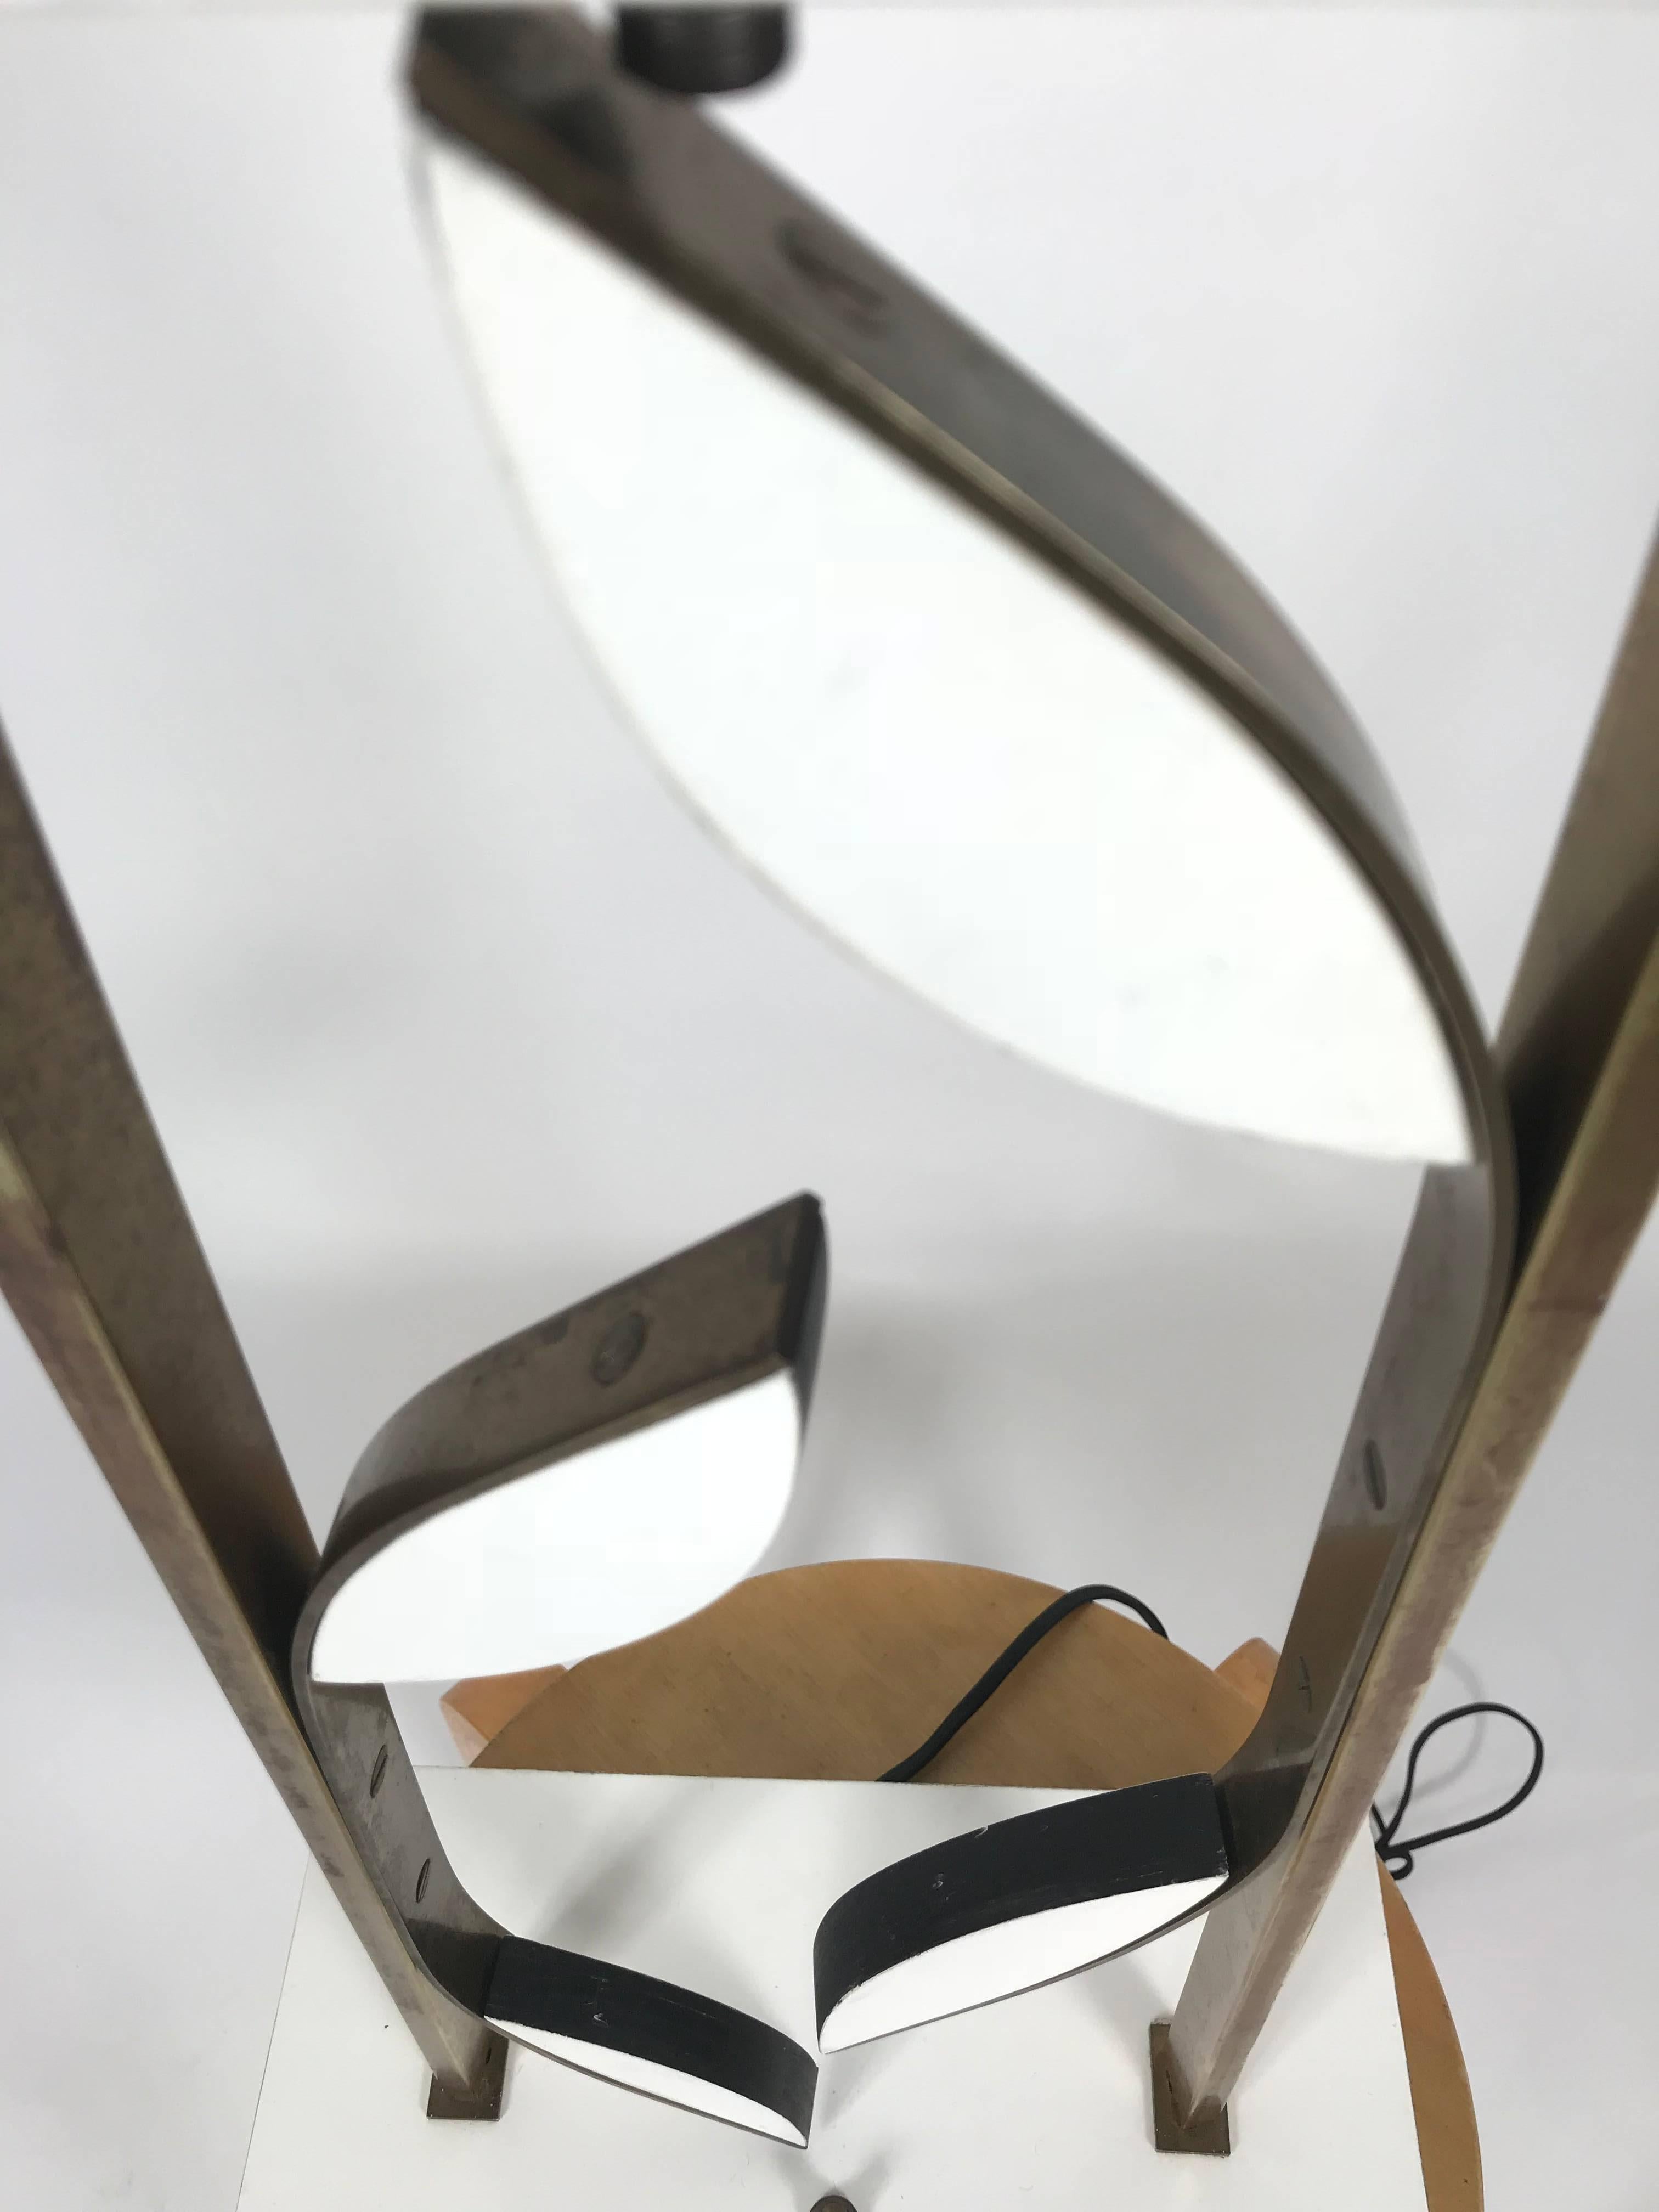 Inhabituelle lampe de table moderne du milieu du siècle en laiton et laque attribuée à Heifetz. Forme de fleur organique, pétales en bois laqué noir et blanc entourés de laiton, conserve l'épi de faîtage d'origine, qualité et construction étonnantes.